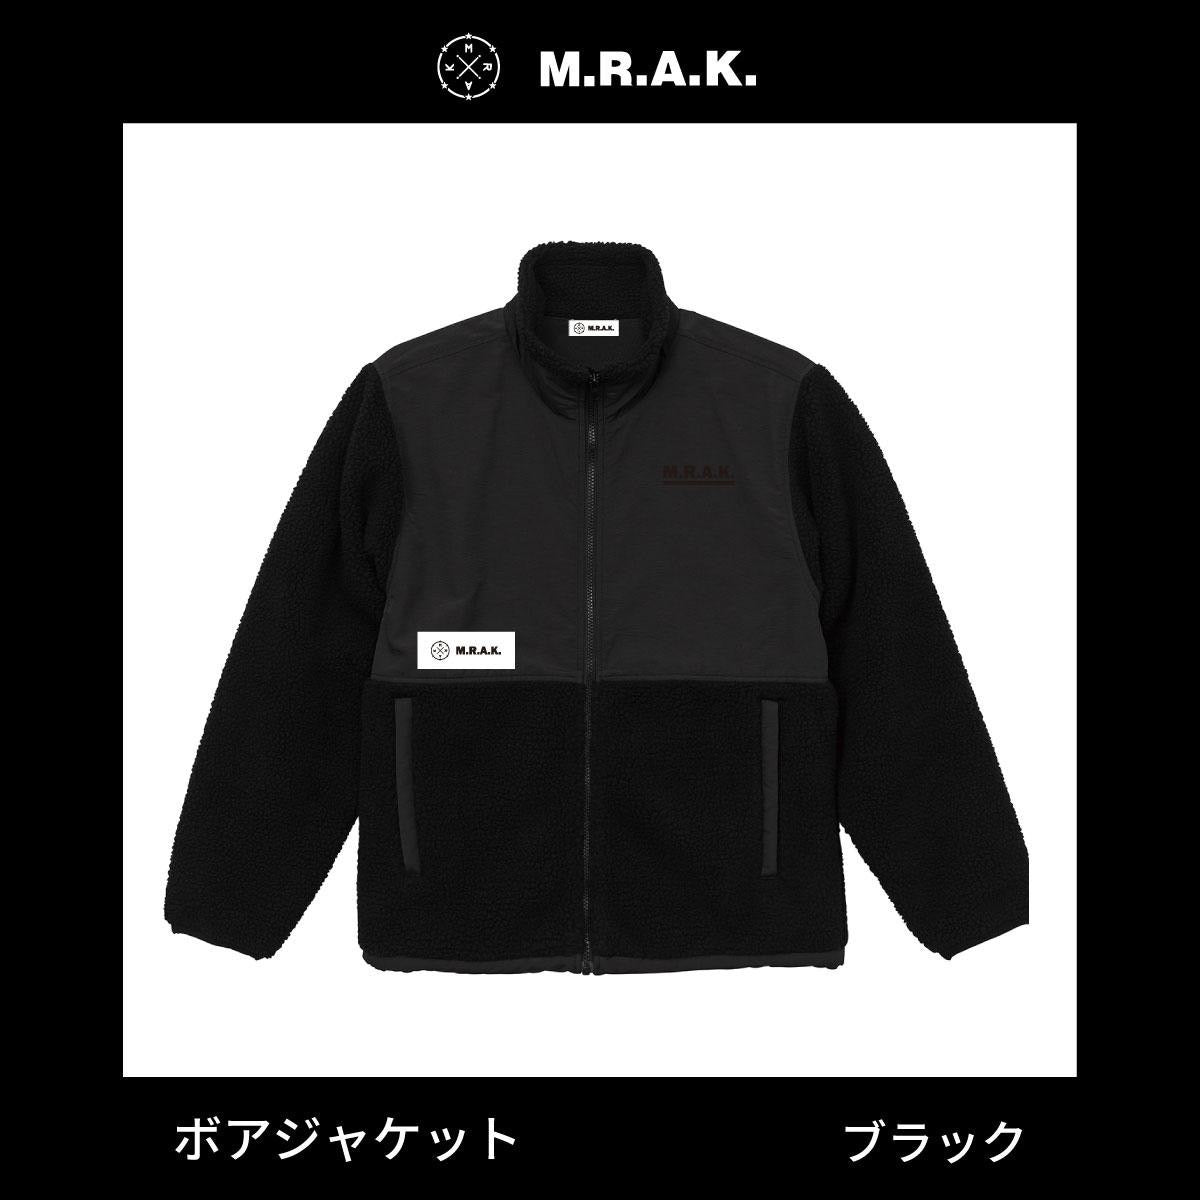 ボアジャケット – M.R.A.K.